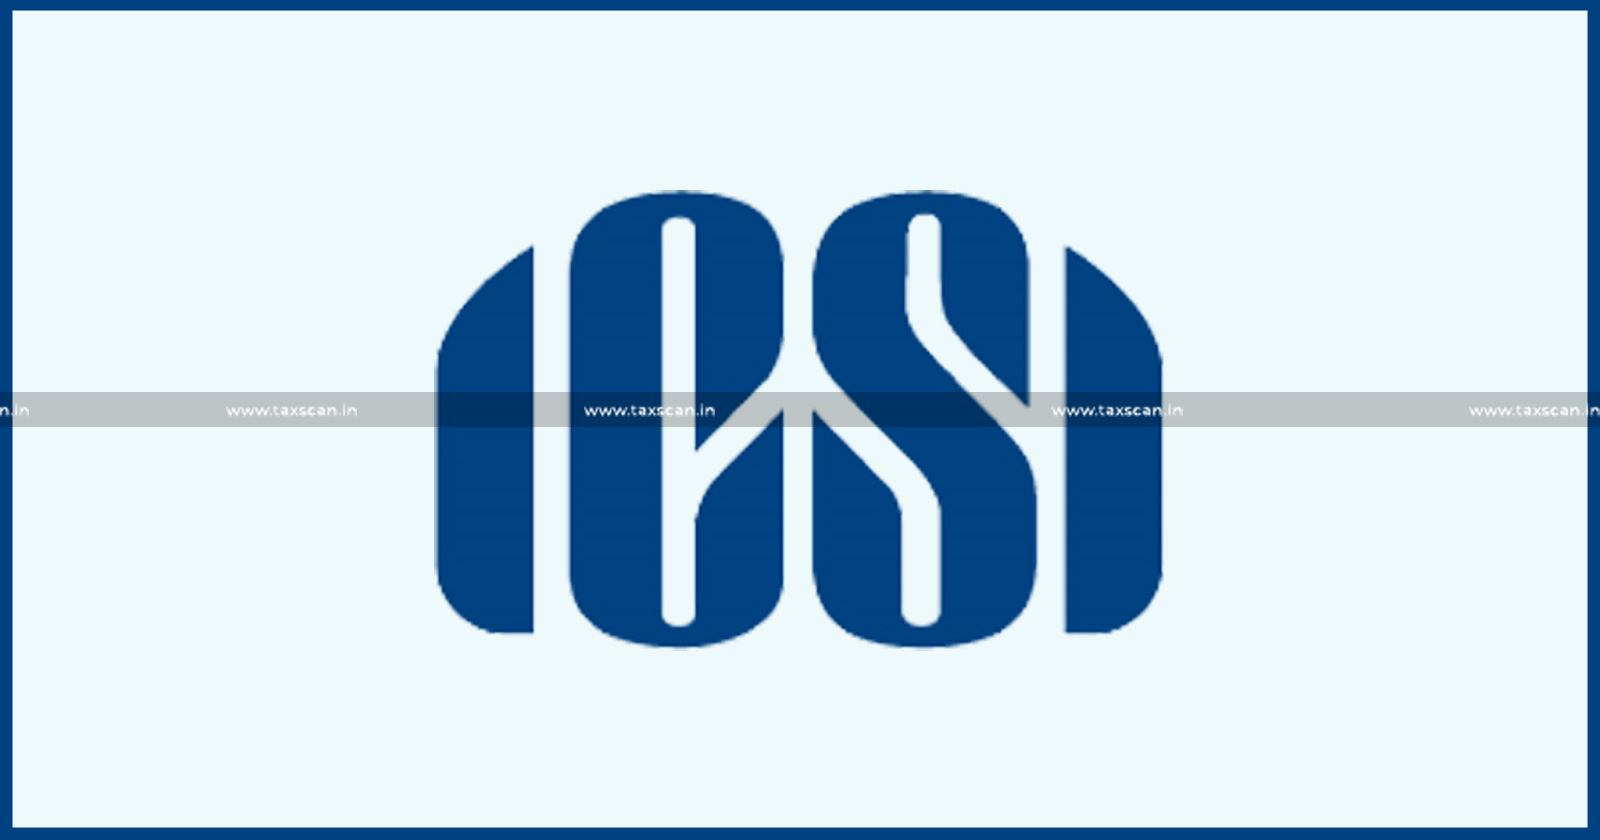 ICSI Council - NISM - ICSI - TAXSCAN